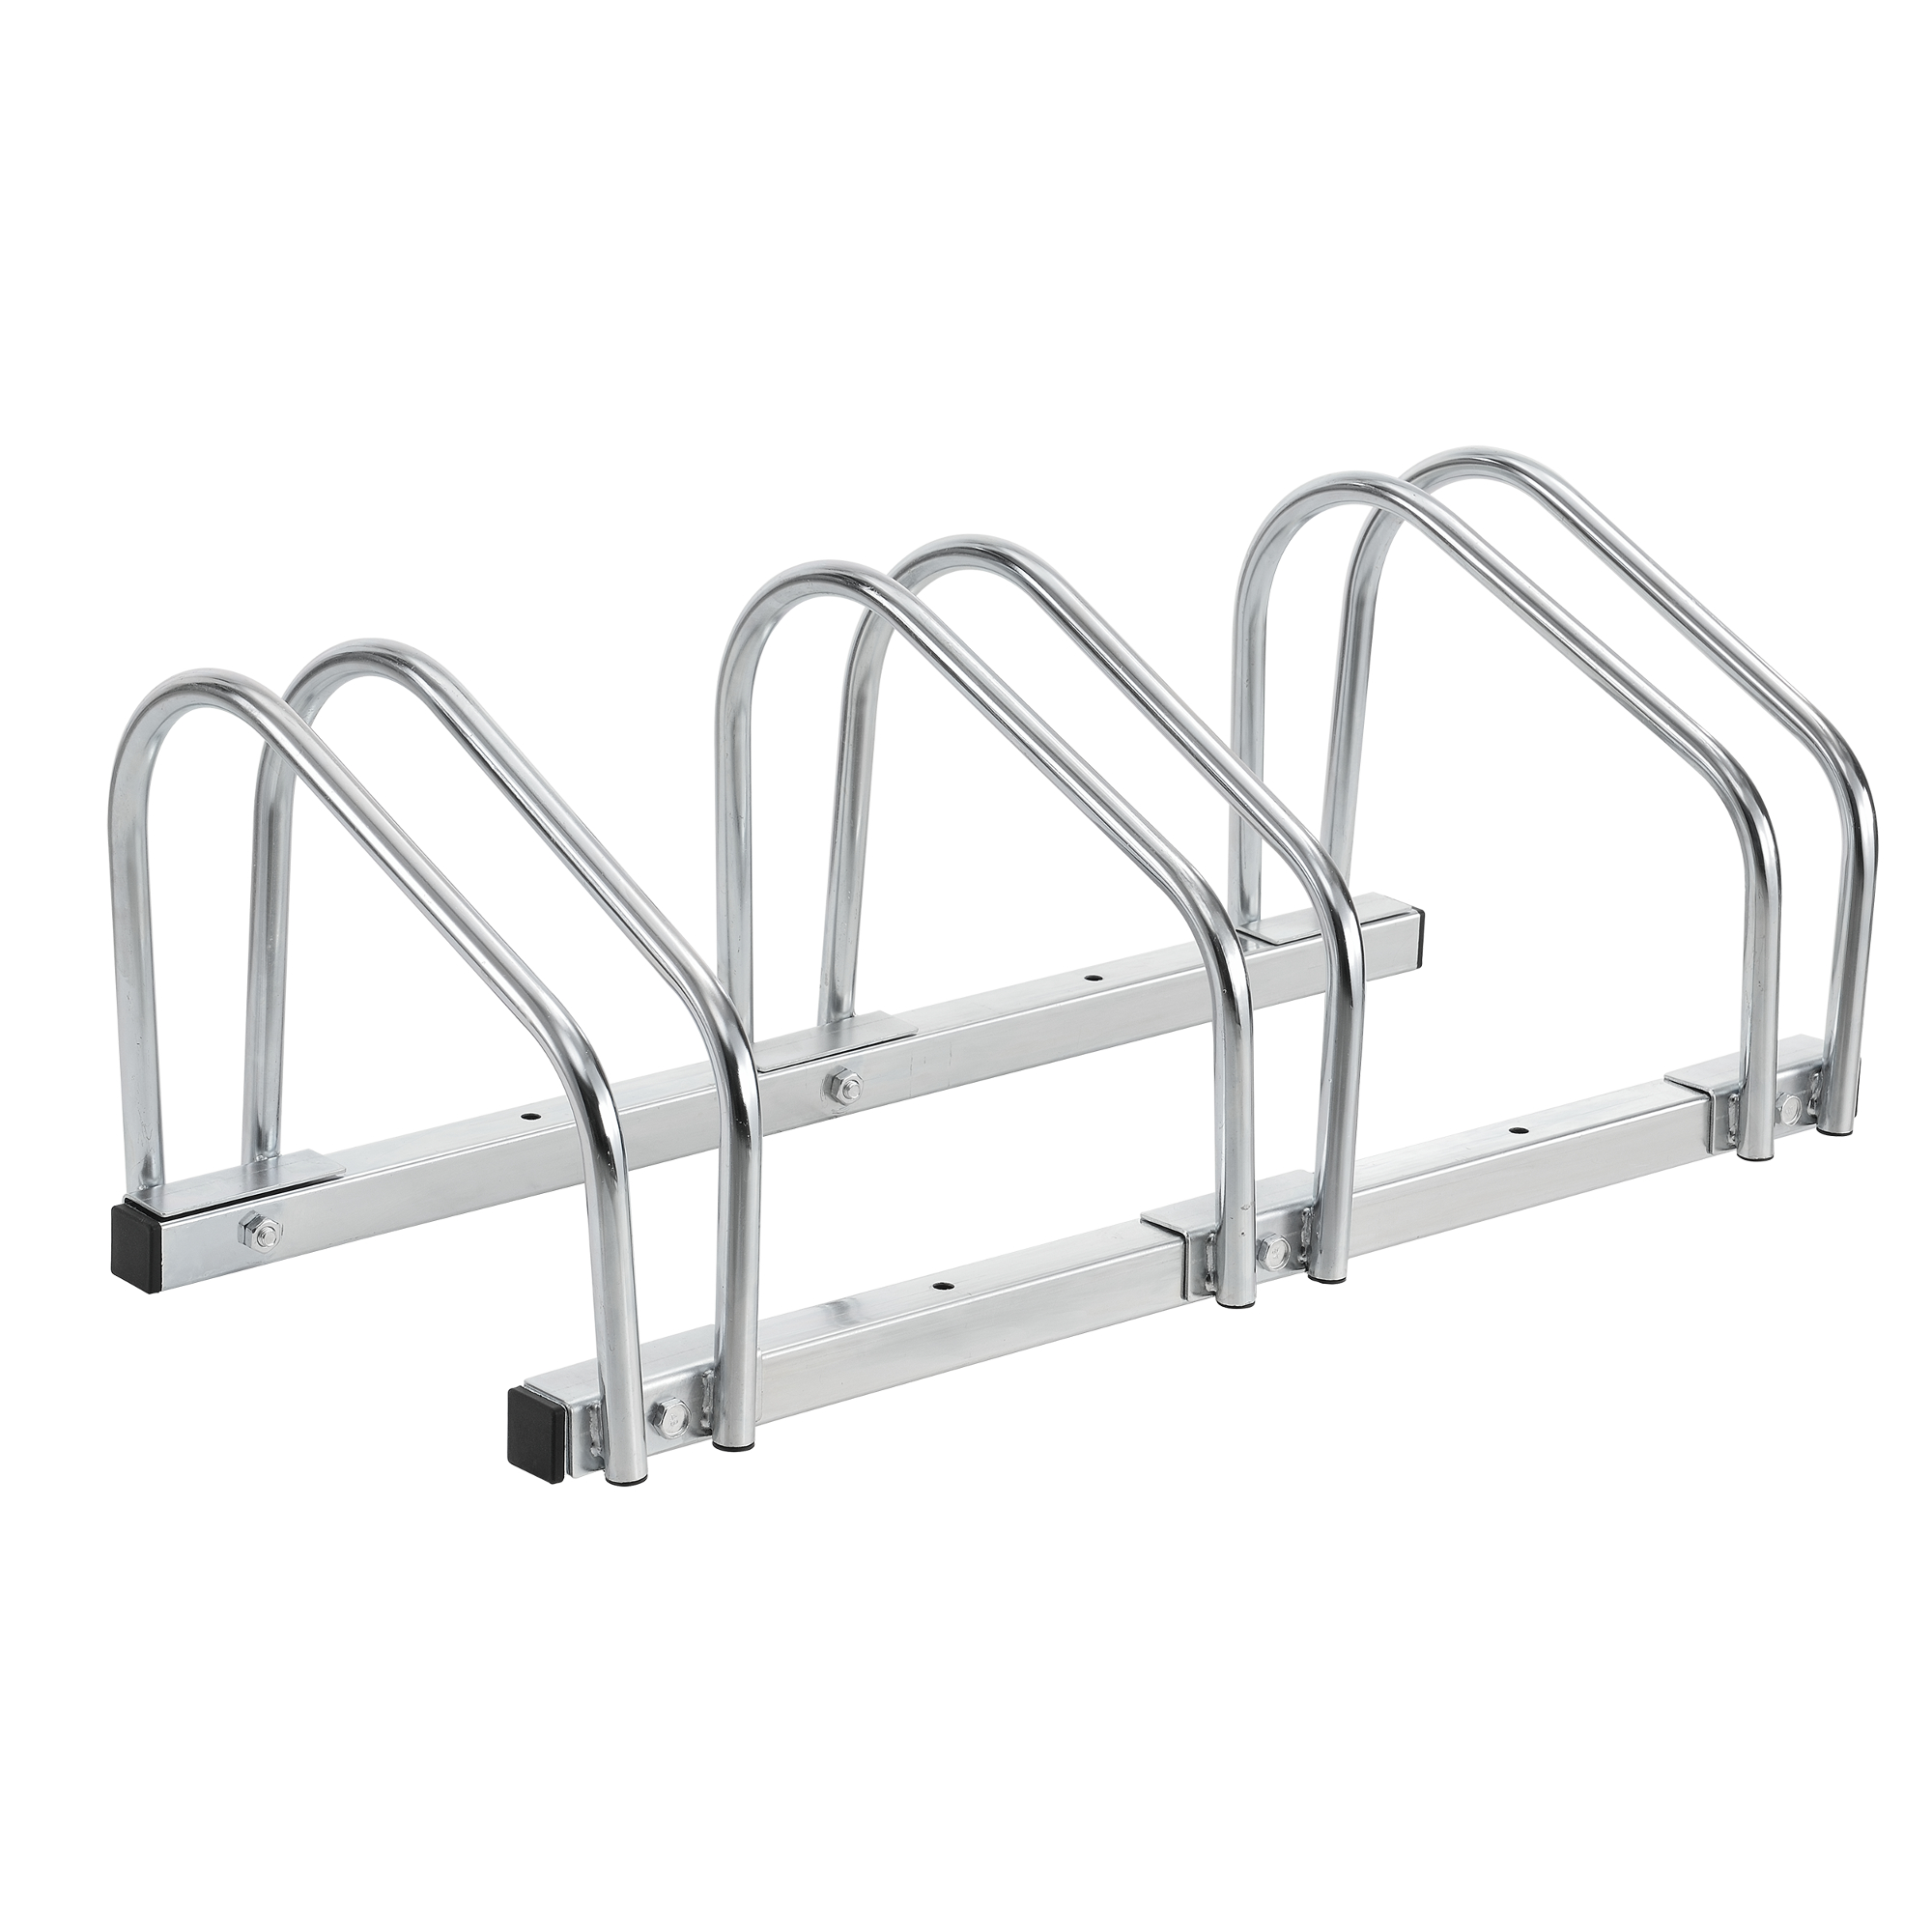 neu.haus ® Fahrradständer Ständer Mehrfachständer Stahl verzinkt Für 2-5 Räder 